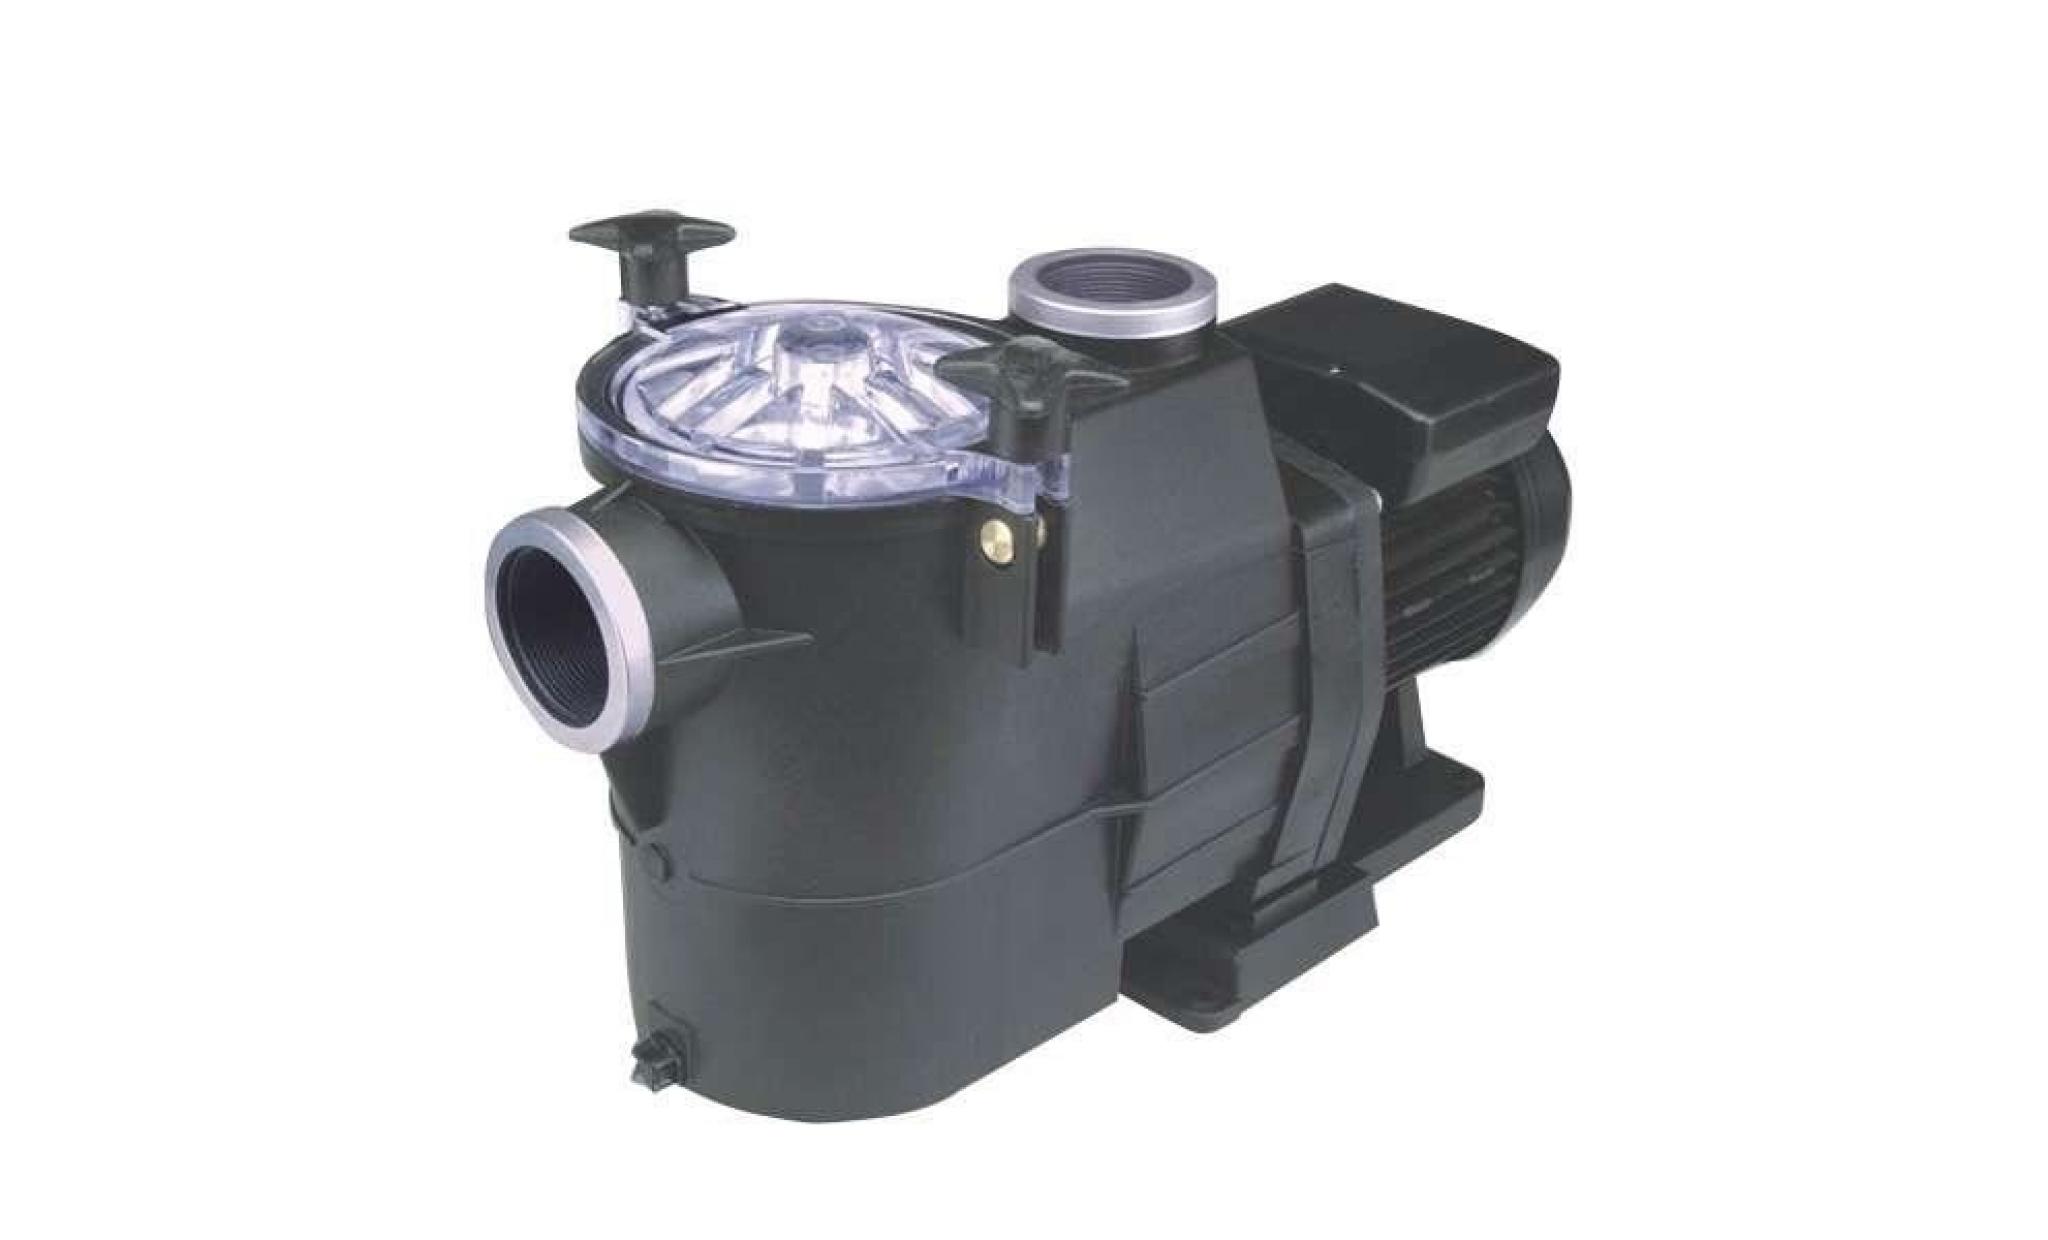 pompe filtration astral europa 2 cv mono 25,7 m3/h